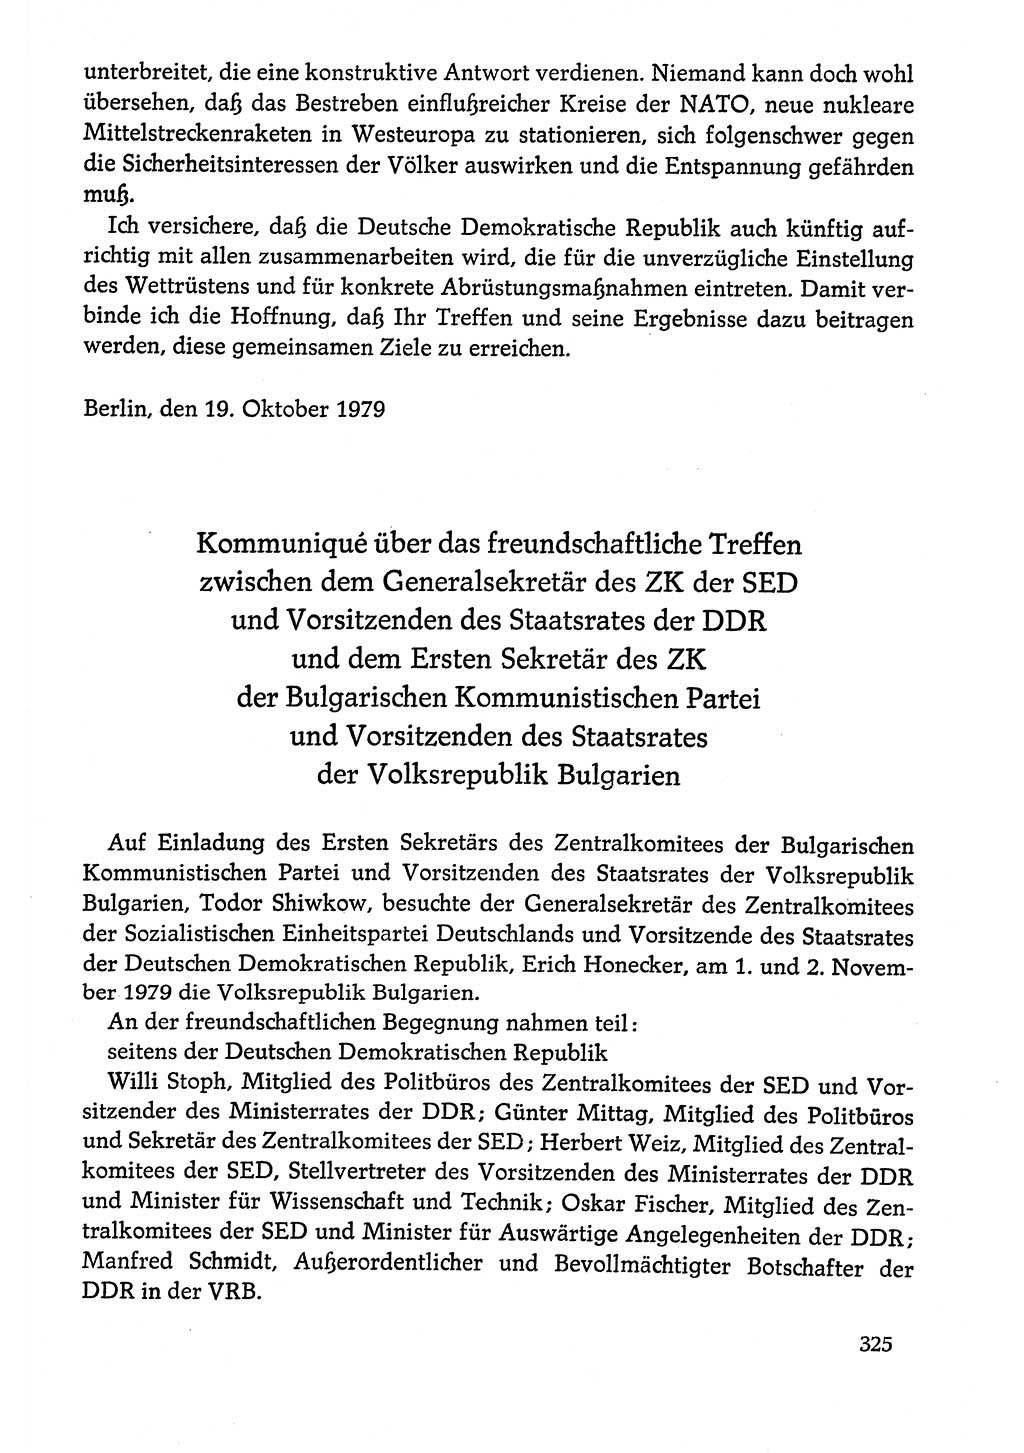 Dokumente der Sozialistischen Einheitspartei Deutschlands (SED) [Deutsche Demokratische Republik (DDR)] 1978-1979, Seite 325 (Dok. SED DDR 1978-1979, S. 325)